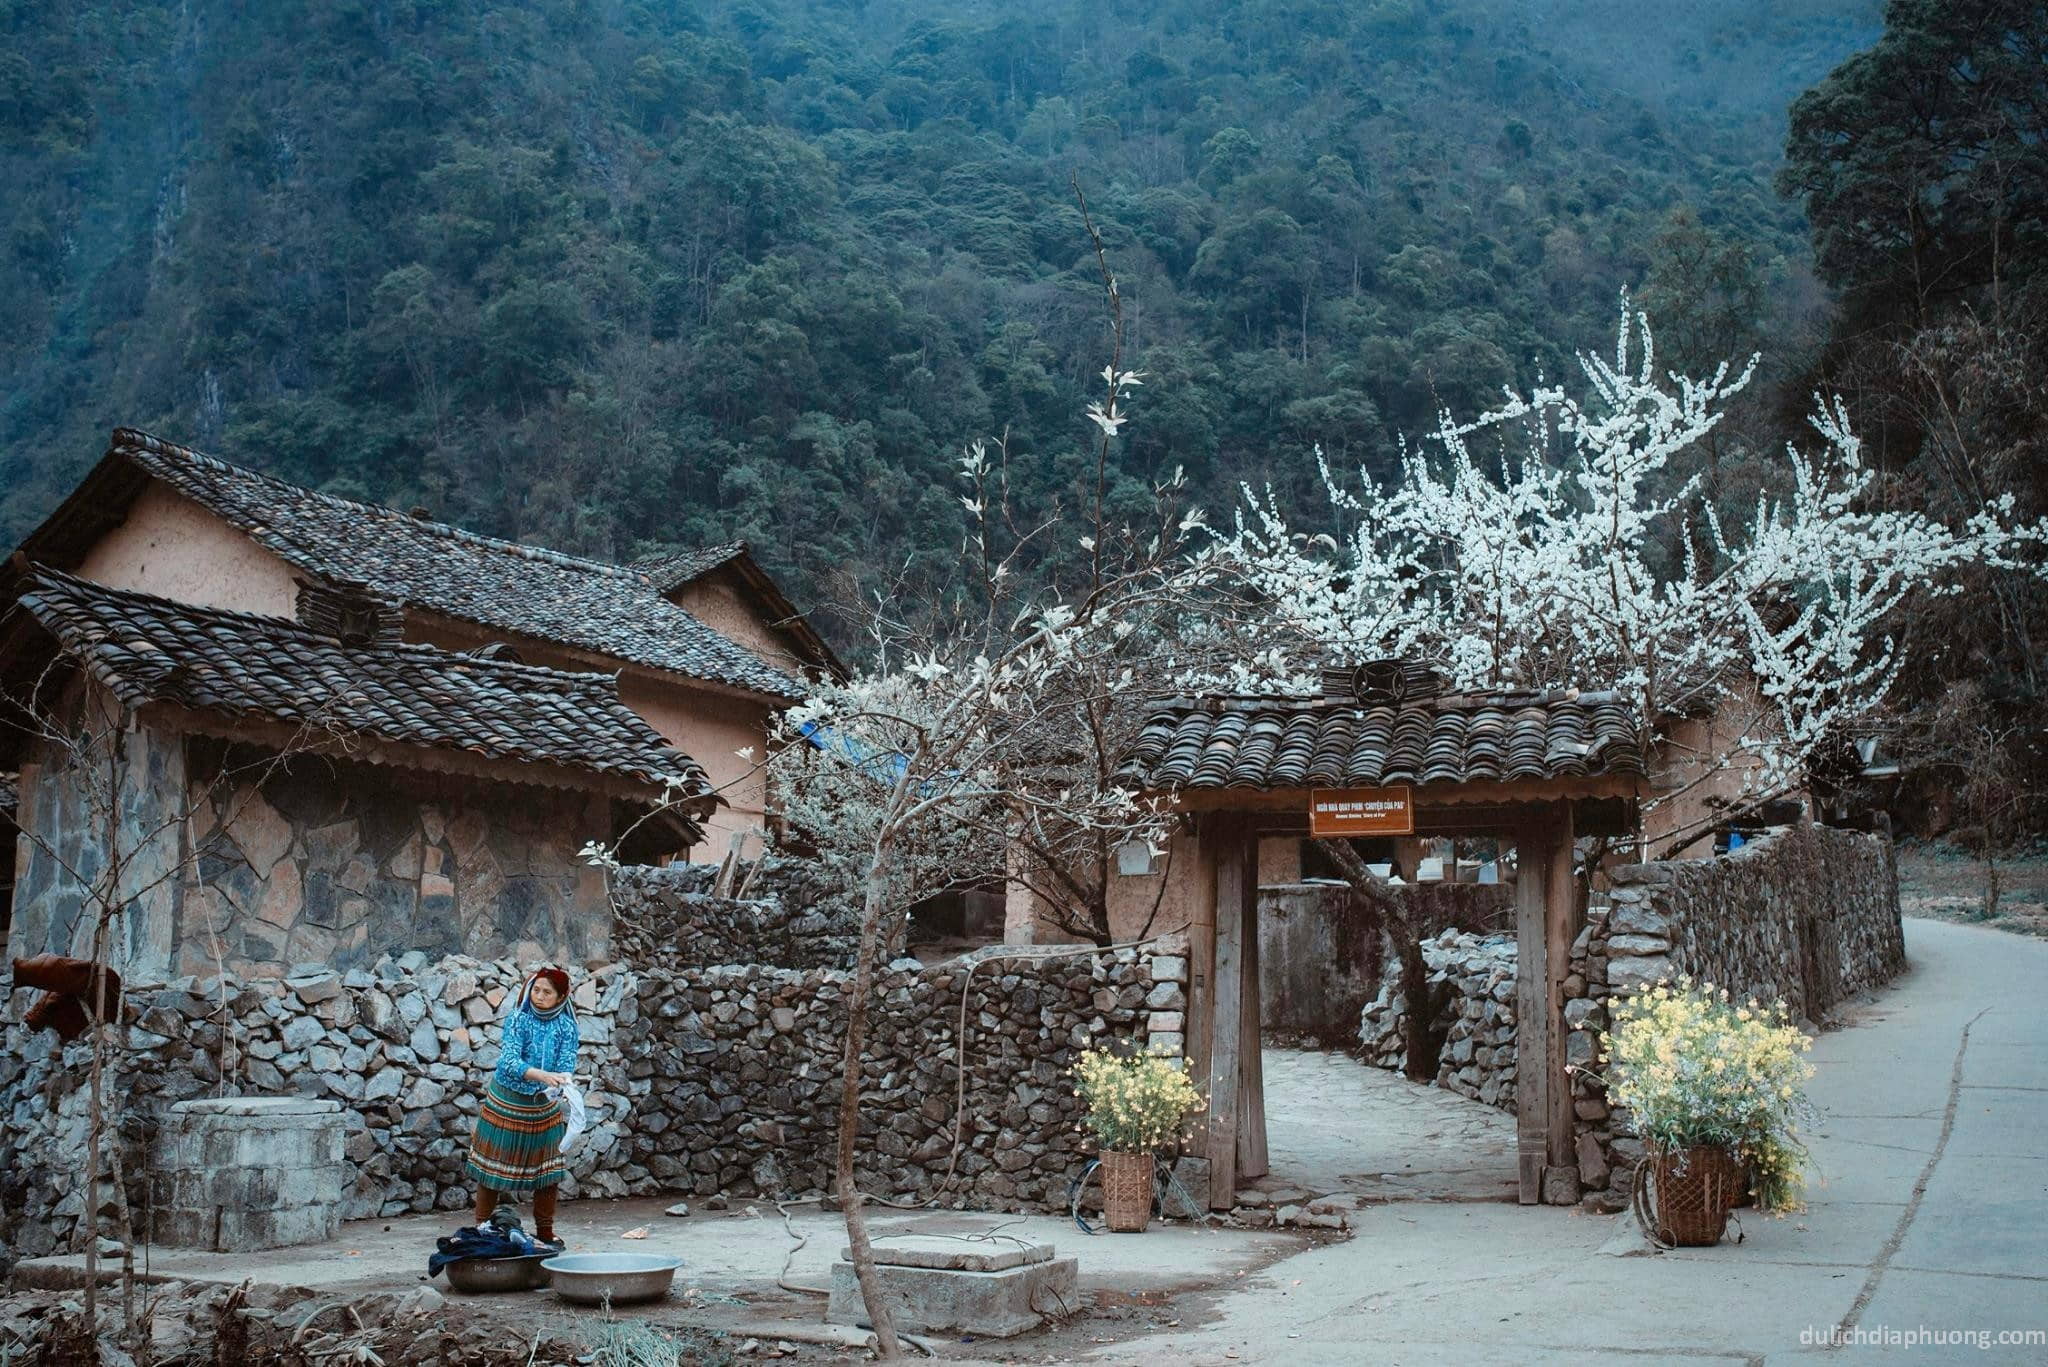 Phố cổ Đồng Văn, một góc rêu phong nơi cao nguyên Hà Giang - Hương Anh  Tourist